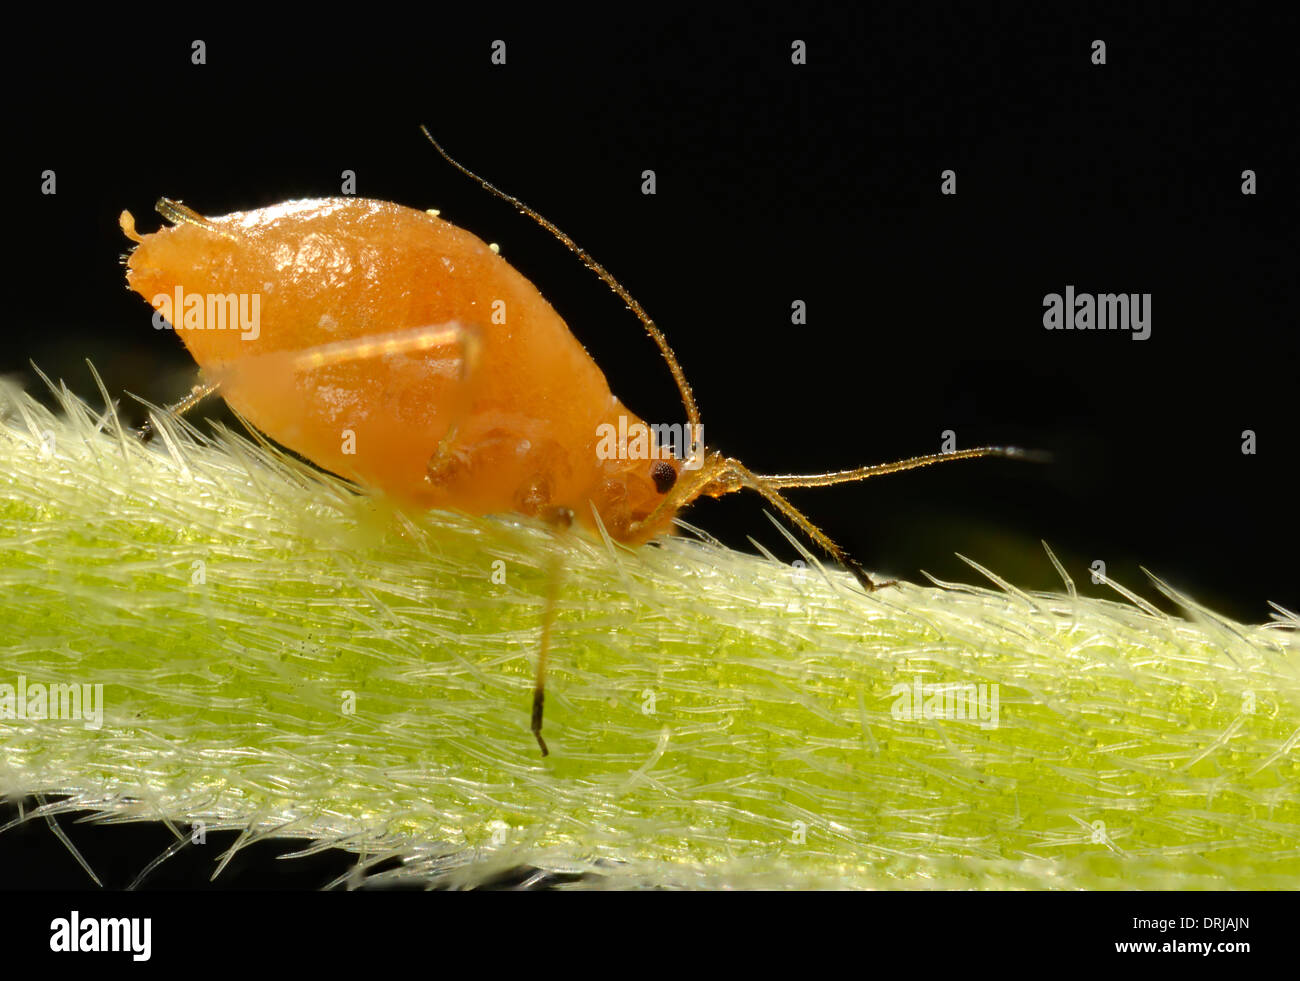 Rohr-Blattläuse (Aphidoidea) Jungtier am Stiel eines auf ein Gänseblümchen (Bellis Perennis) im Gegenlicht, extreme Macroadmission, Röhr Stockfoto